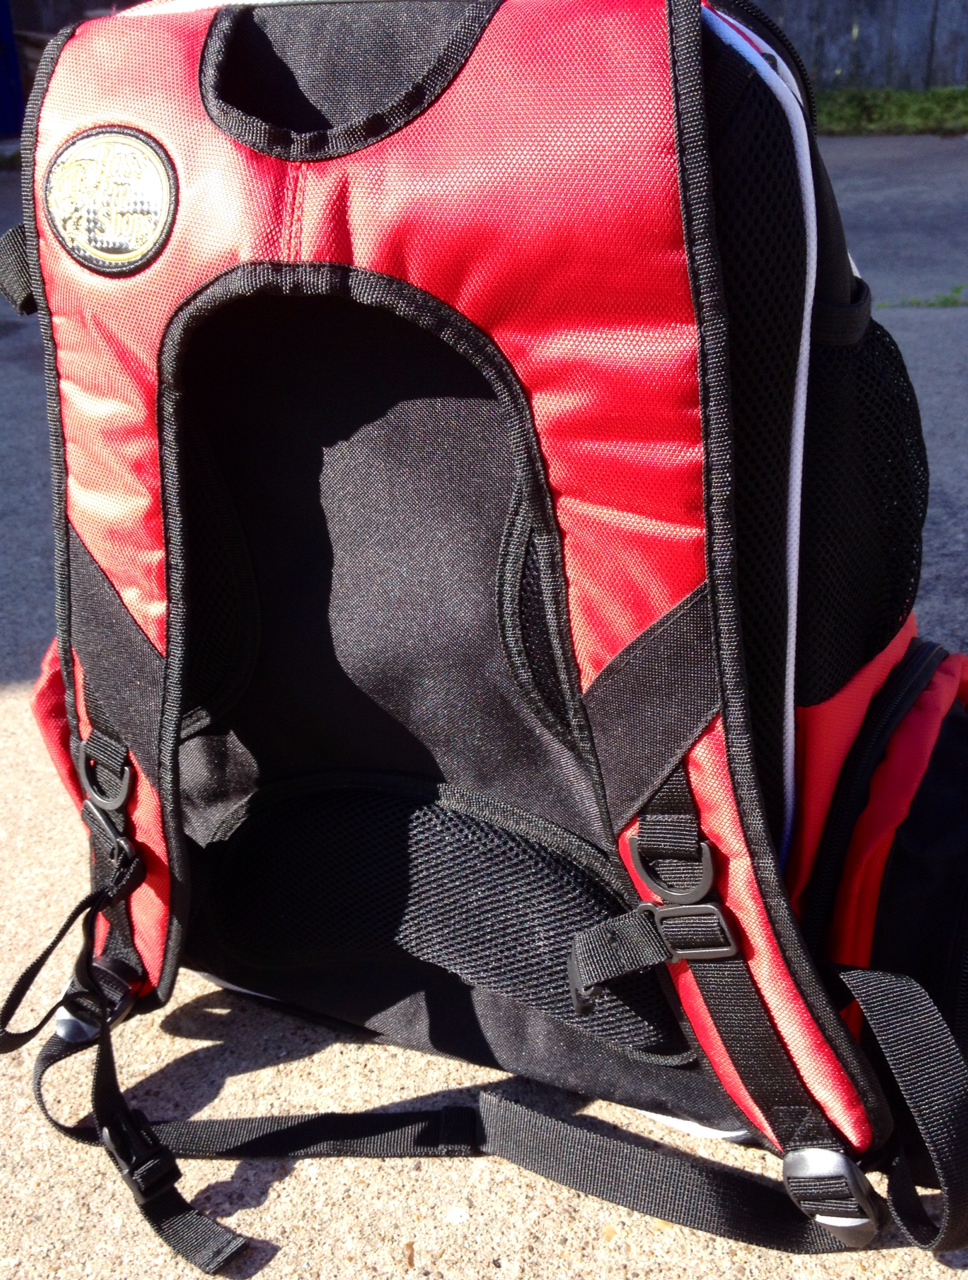 Bass Pro Shops Stalker Backpack Tackle System 5